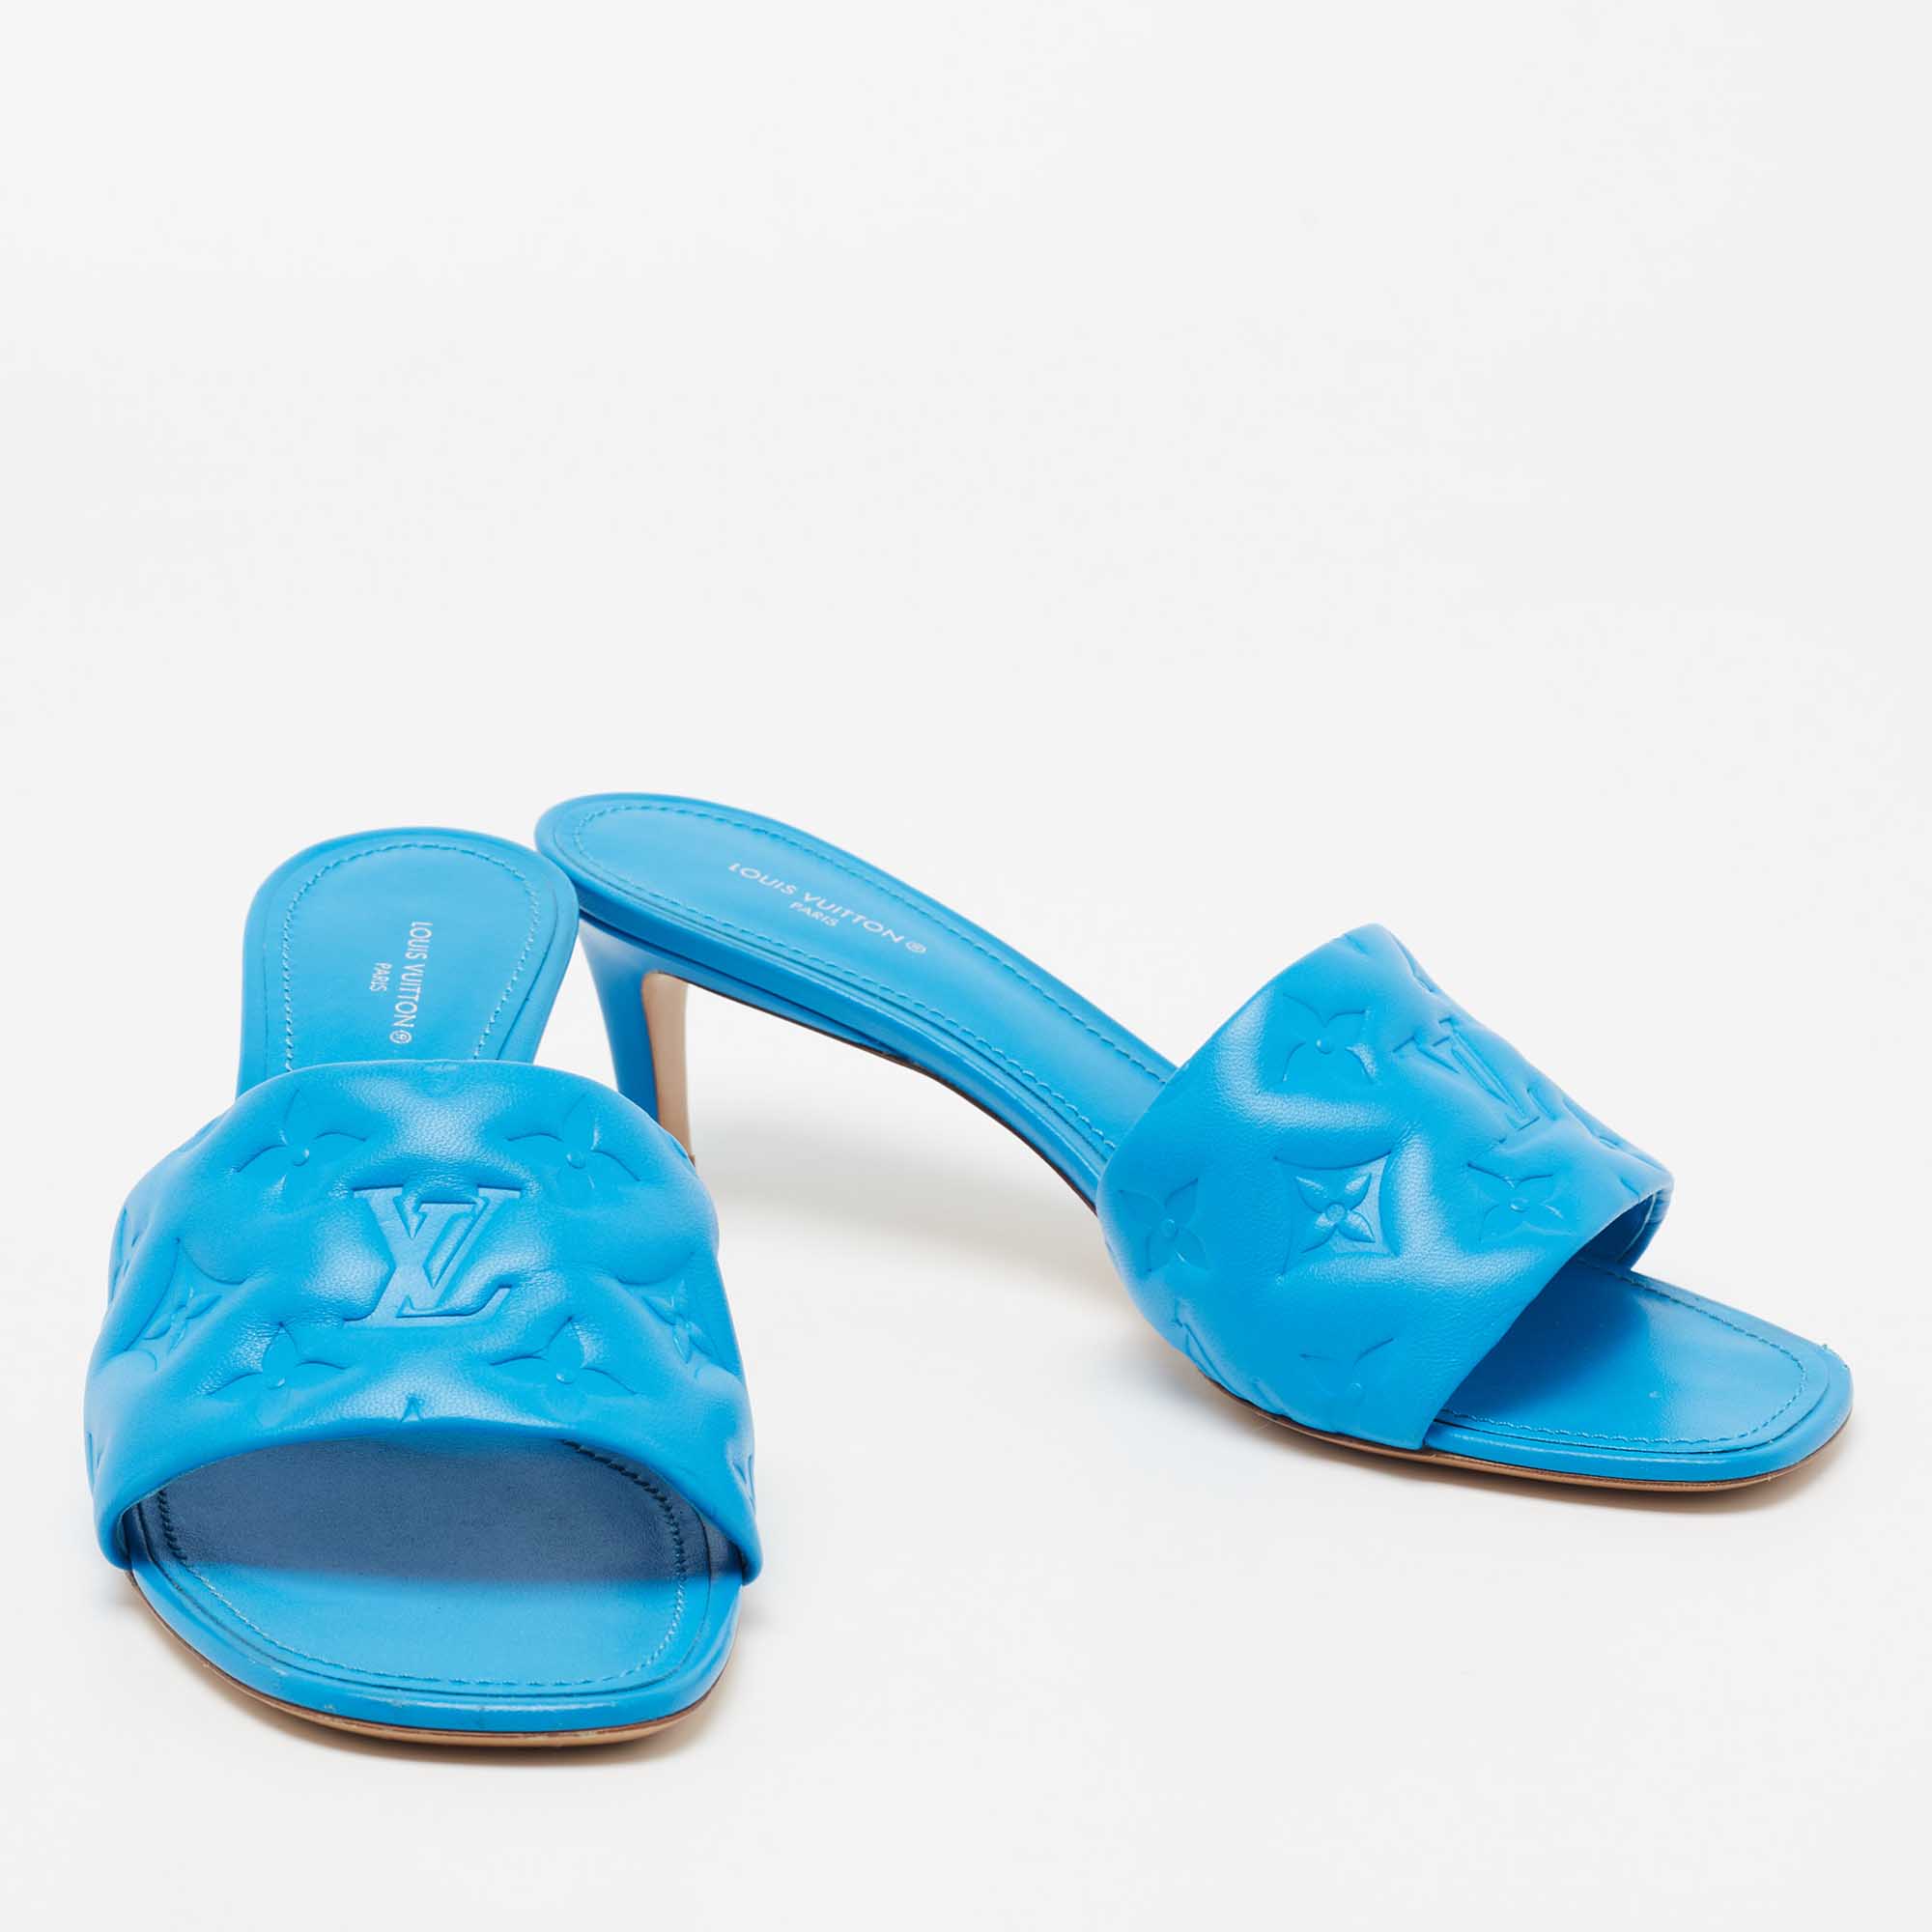 Louis Vuitton Oasis Mule LV Blue For Women - Clothingta